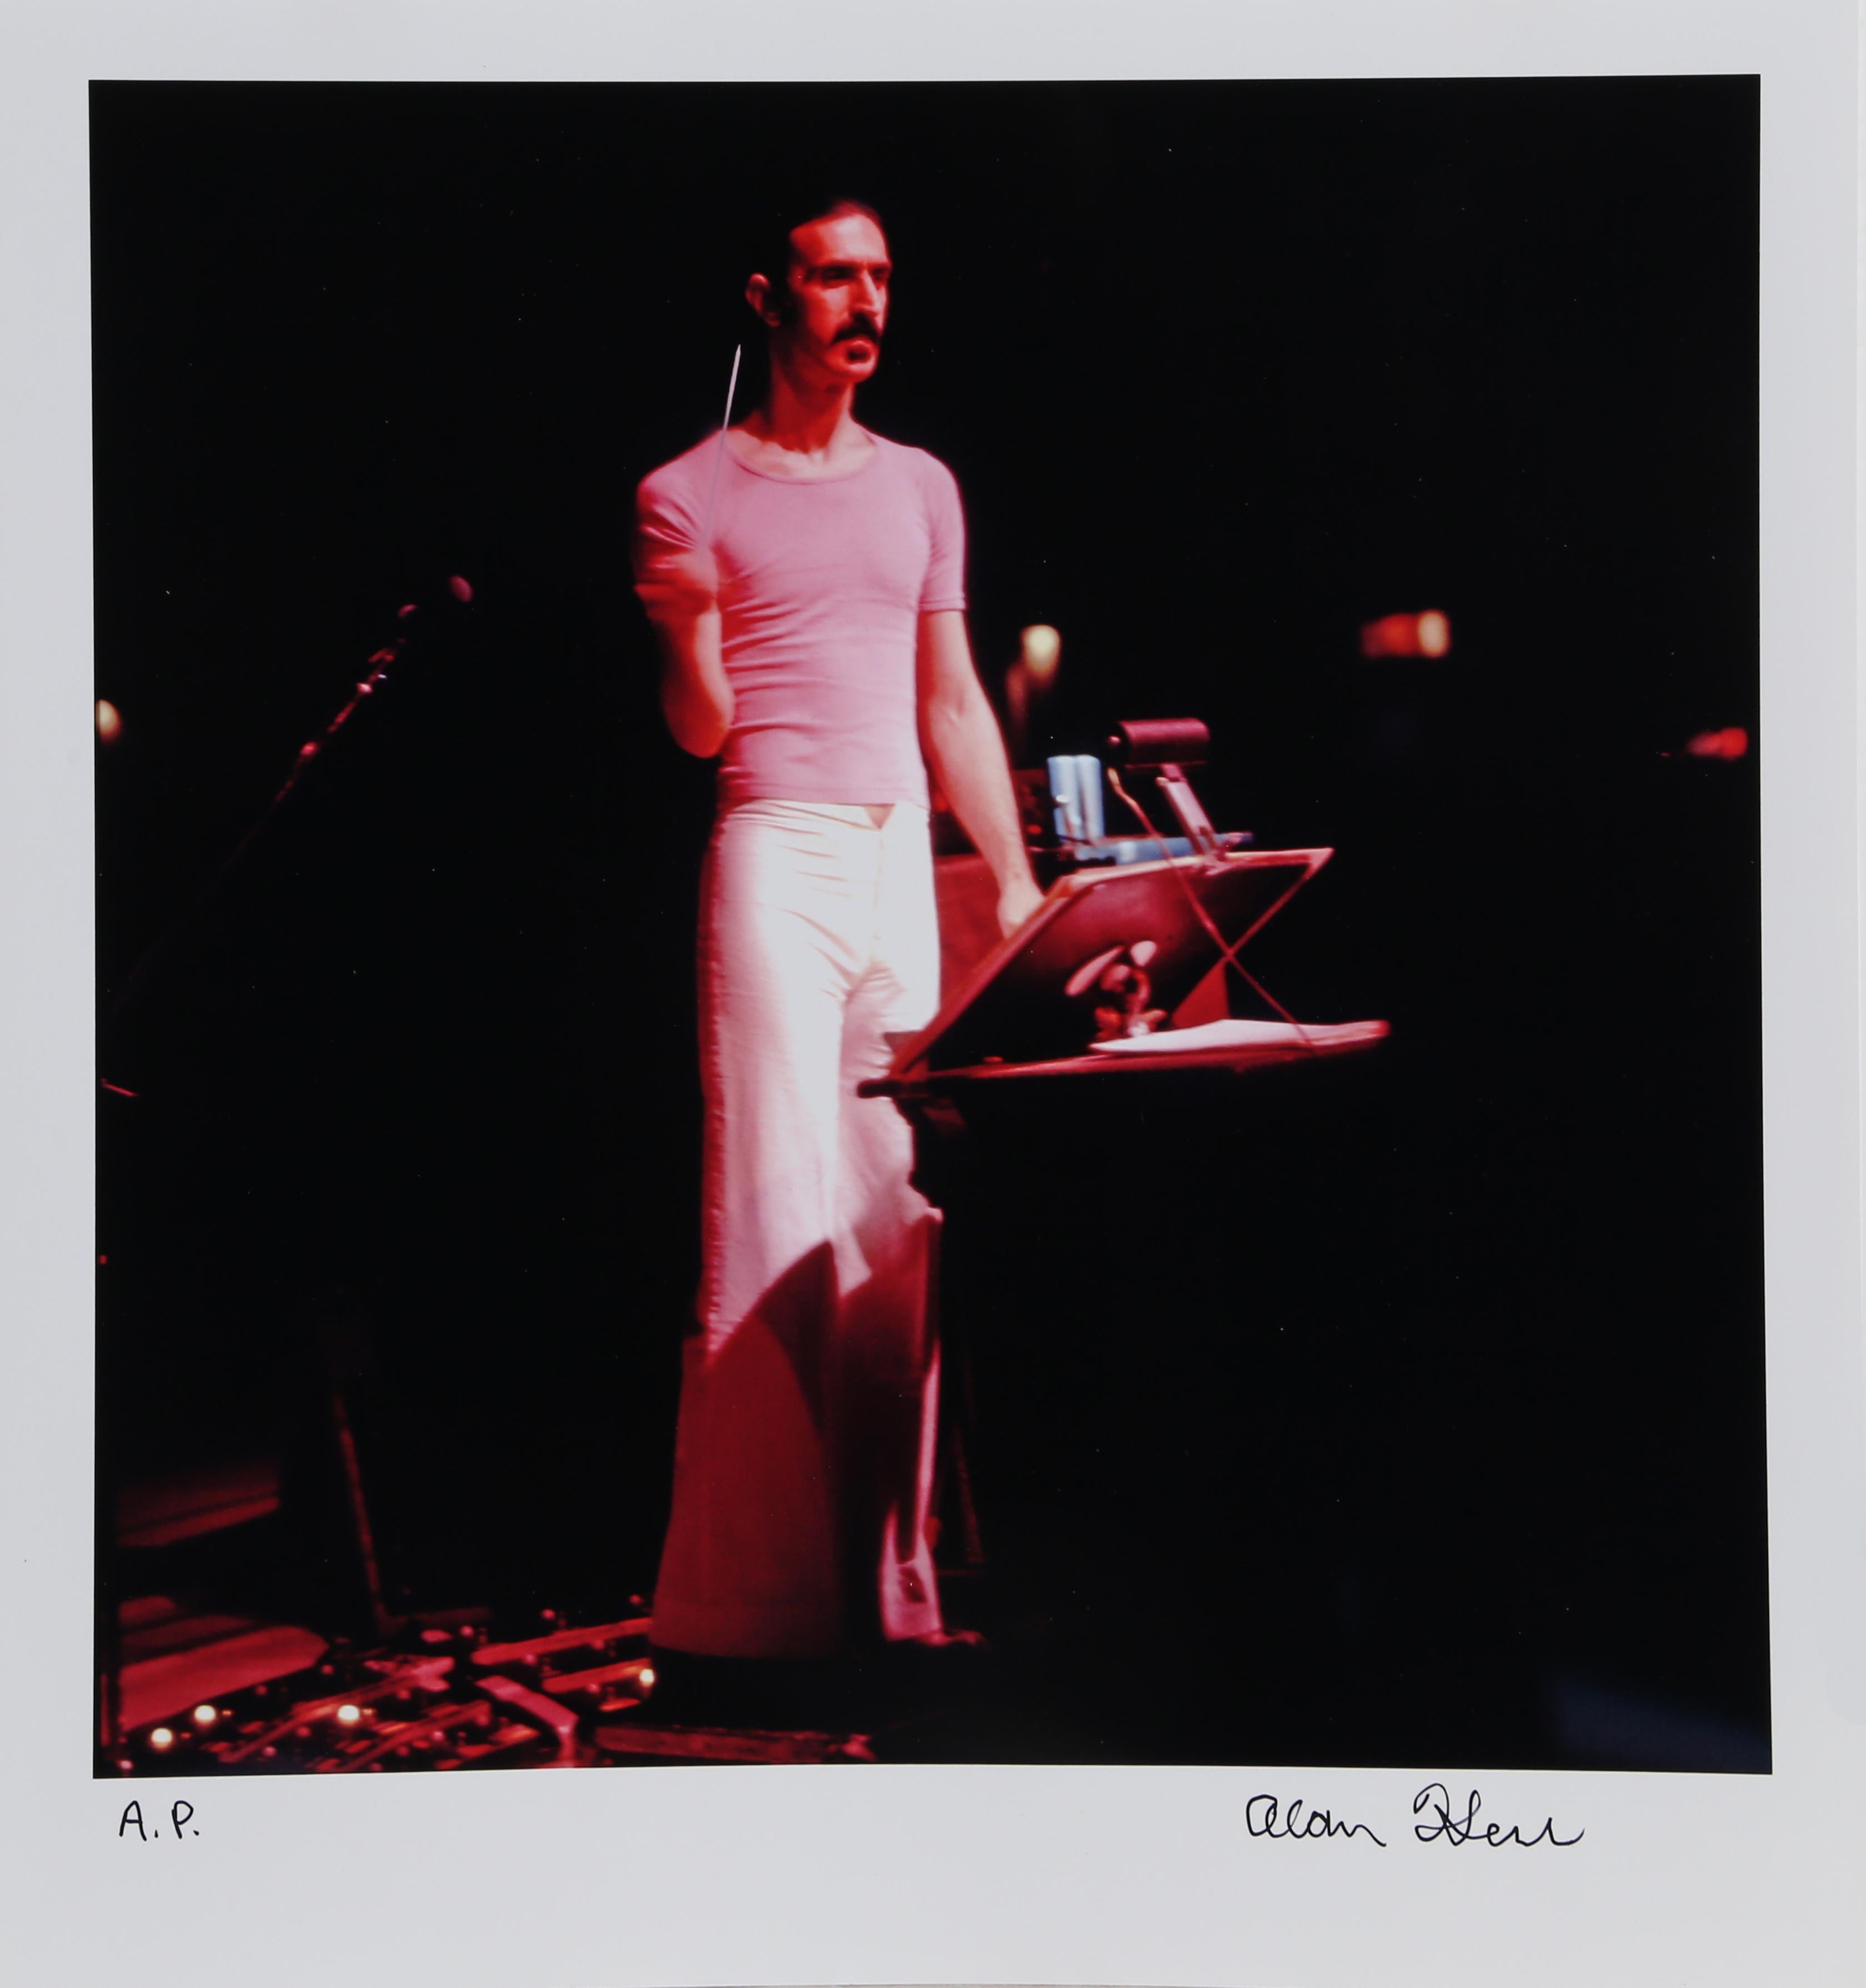 Künstler: Alan Herr, Amerikaner (1954 - )
Titel: Zappa 1
Medium: Digitaler Fotodruck, signiert mit Permanentmarker
Auflage: AP
Größe: 13,5 x 13 Zoll